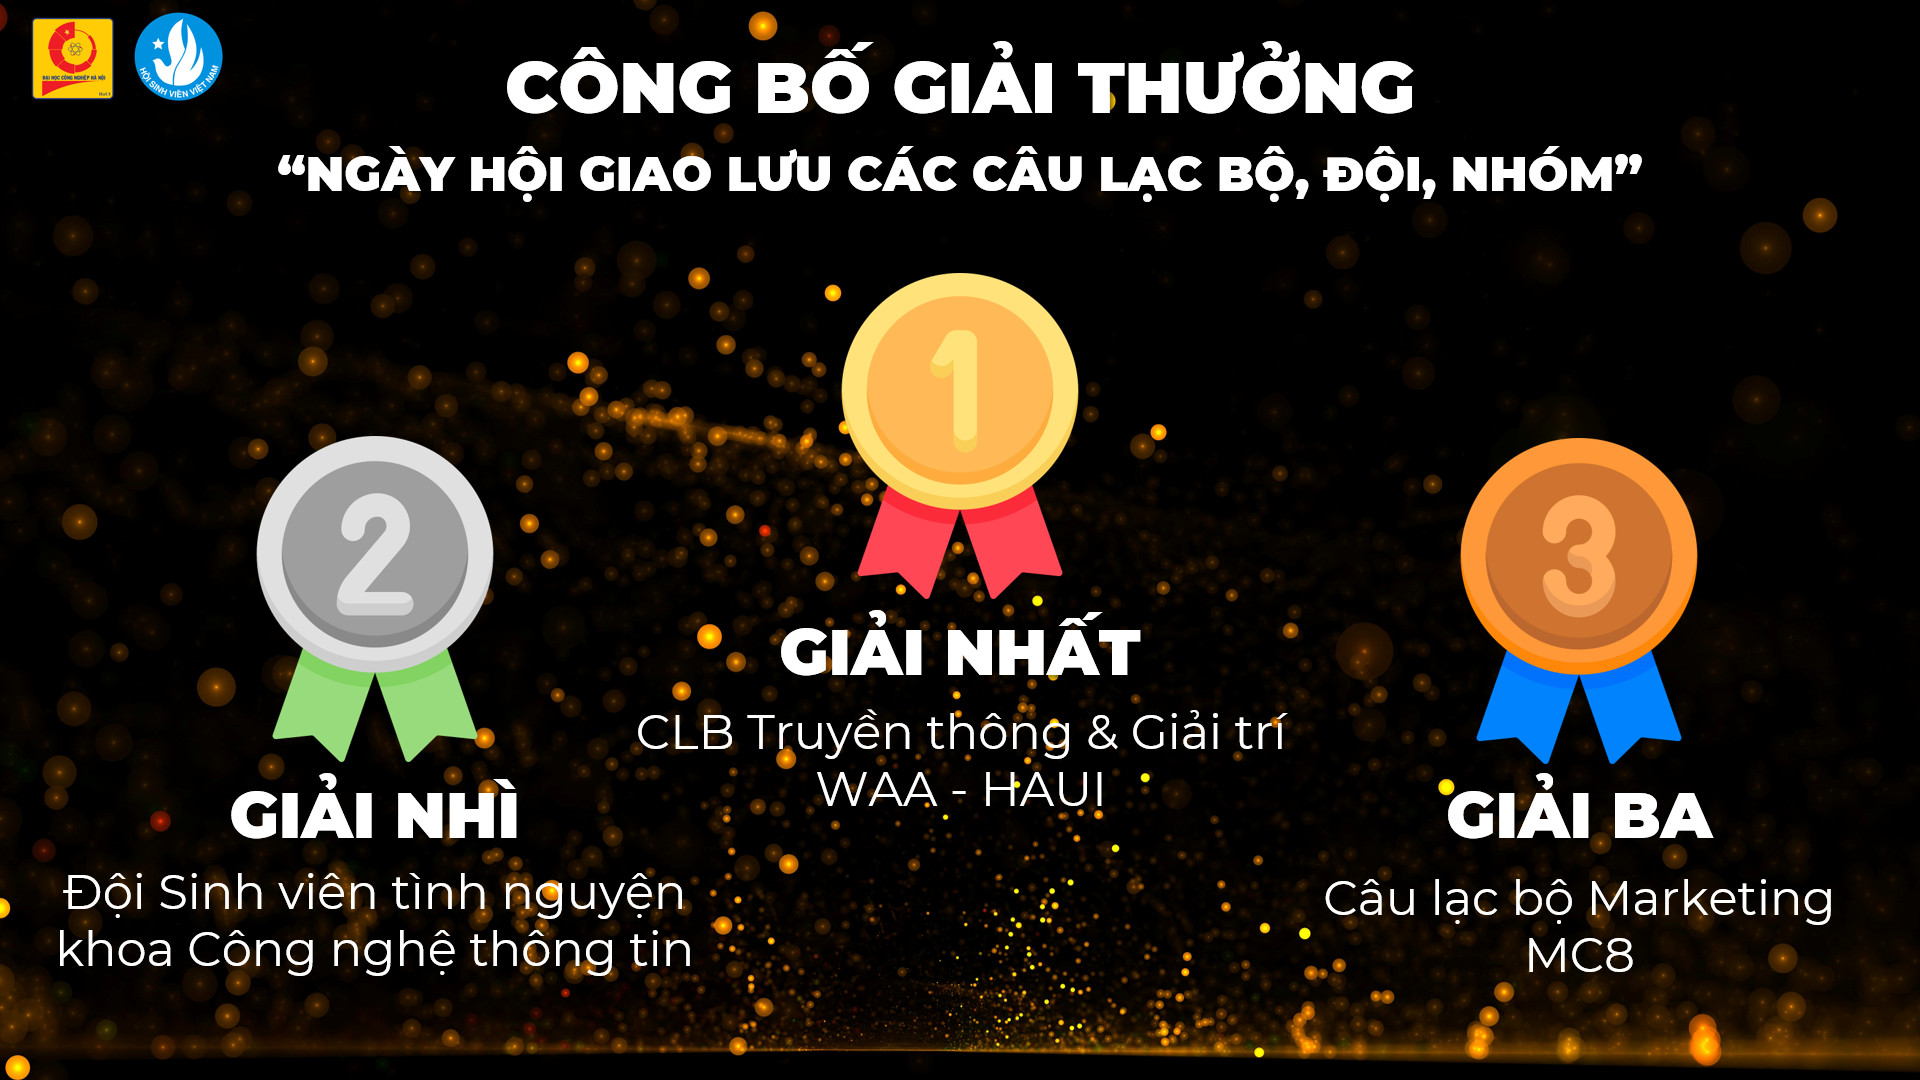 Kỷ niệm 72 năm Ngày truyền thống học sinh sinh viên và Hội Sinh viên Việt Nam (09/01/1950 - 09/01/2022) và tuyên dương “Sinh viên 5 tốt” các cấp và giải thưởng Sao tháng Giêng năm 2021